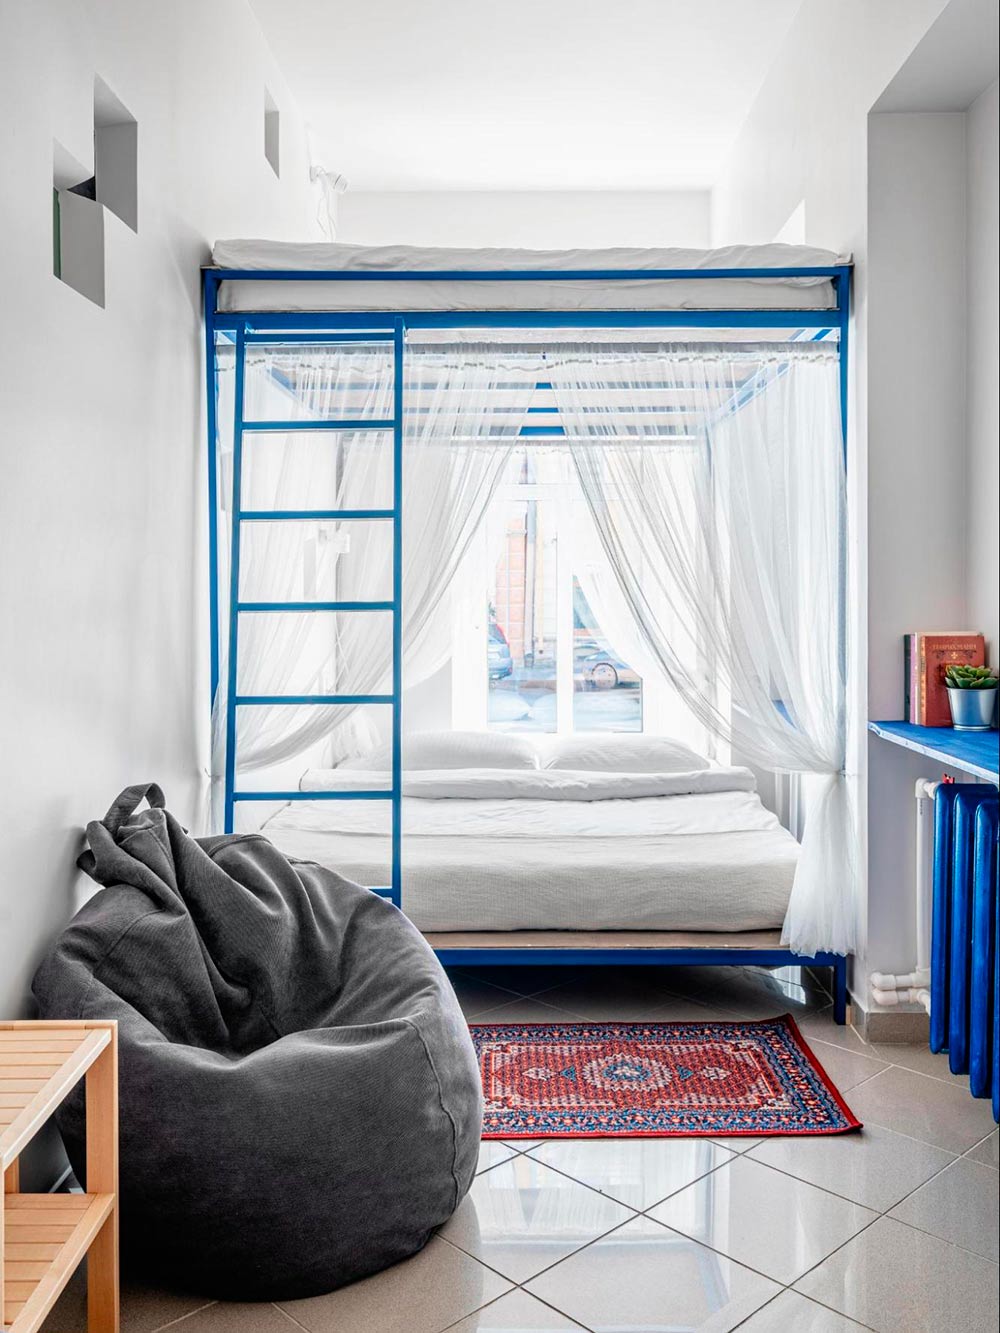 Создание винтажной спальни :: Блог Лида & Антон - Интересно о мебели и дизайне интерьеров